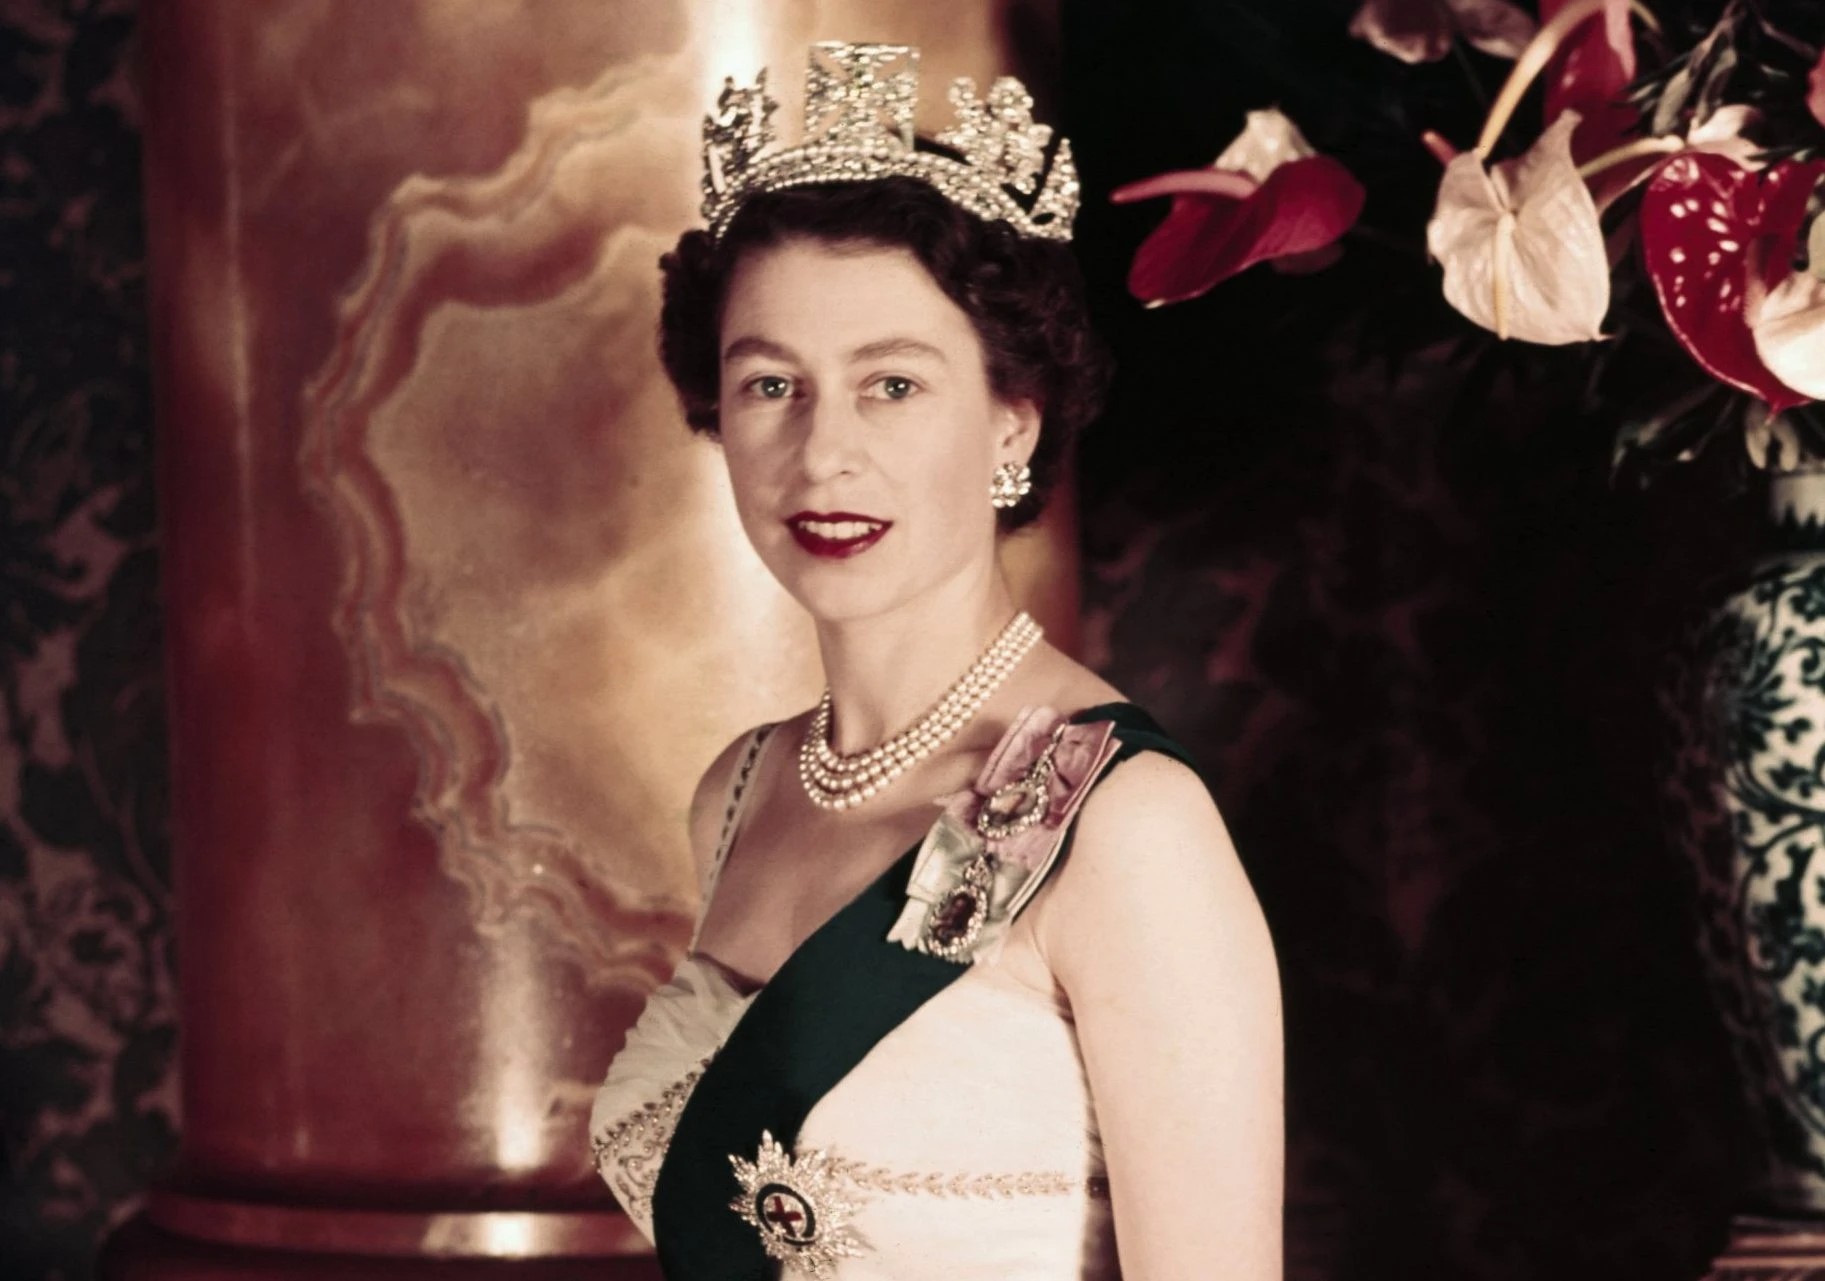 Πέθανε η Βασίλισσα Ελισάβετ- Το παλάτι θρηνεί για την μακροβιότερη μονάρχη της ιστορίας-Βασιλιάς της Μεγάλης Βρετανίας ο Κάρολος